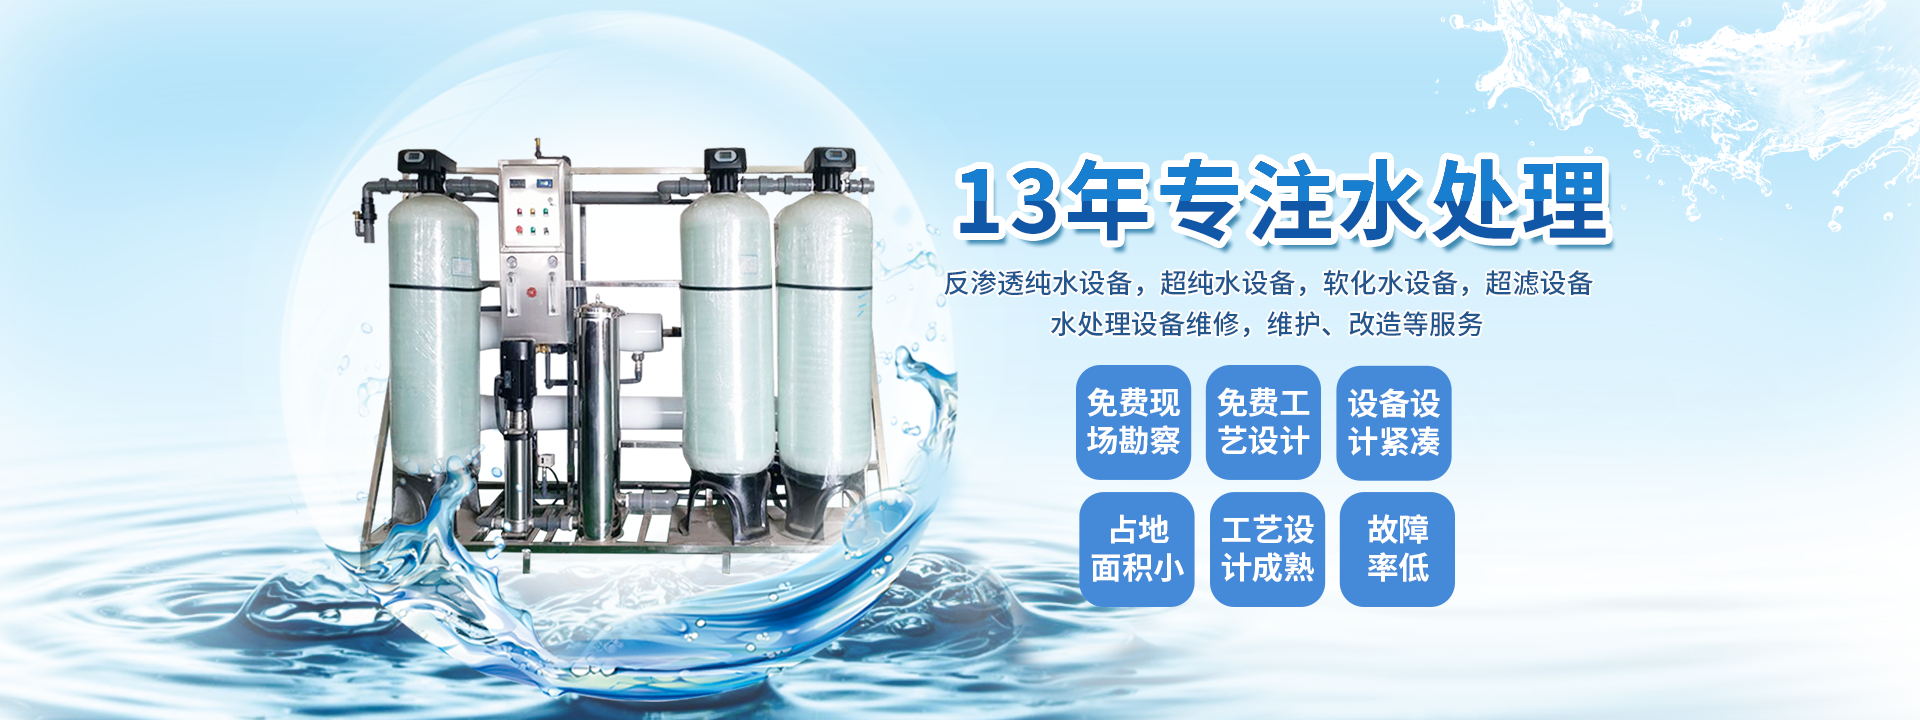 【48812】ro反渗透纯洁水处理设备-ro反渗透纯洁水处理设备品牌、图片、排行榜 - 阿里巴巴